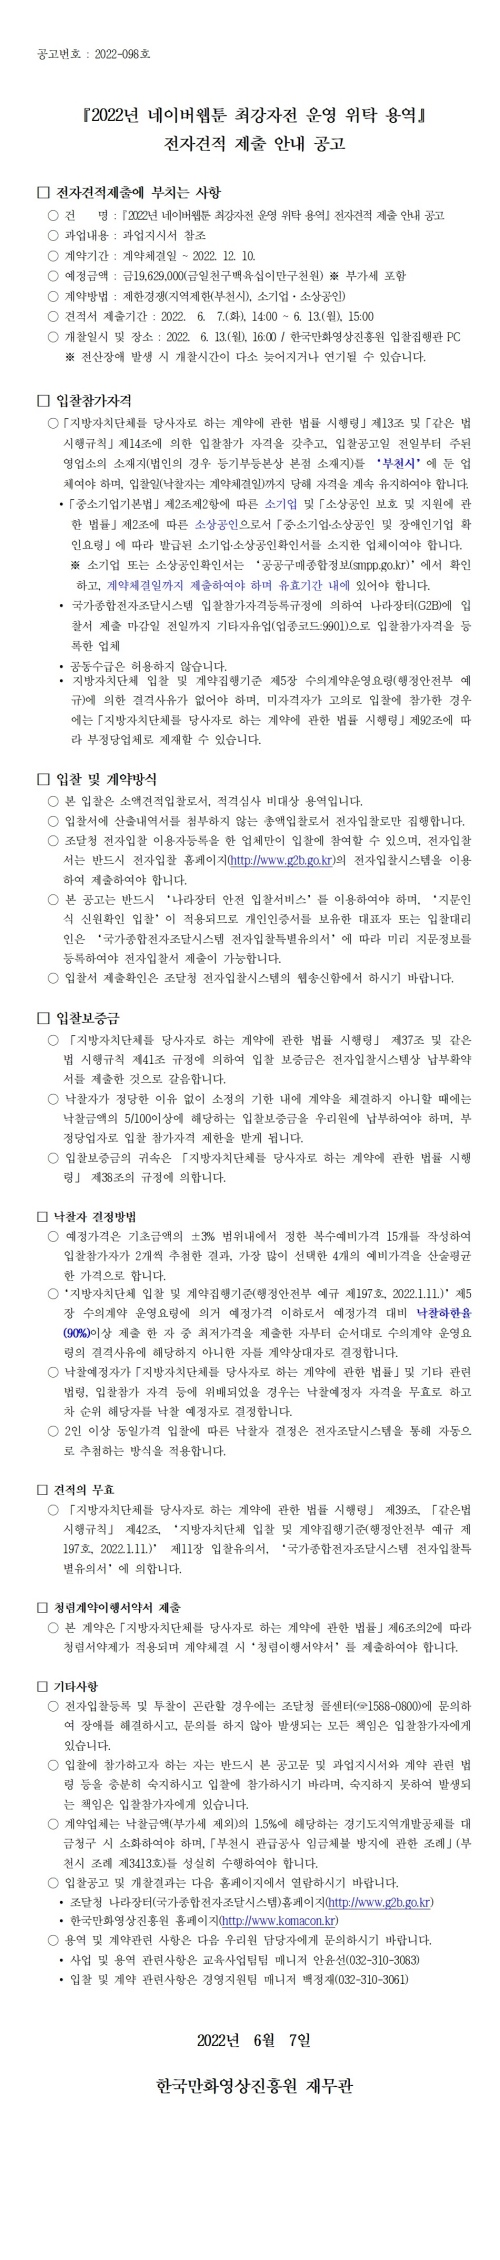 『2022년 네이버웹툰 최강자전 운영 위탁 용역』 전자견적 제출 안내 공고